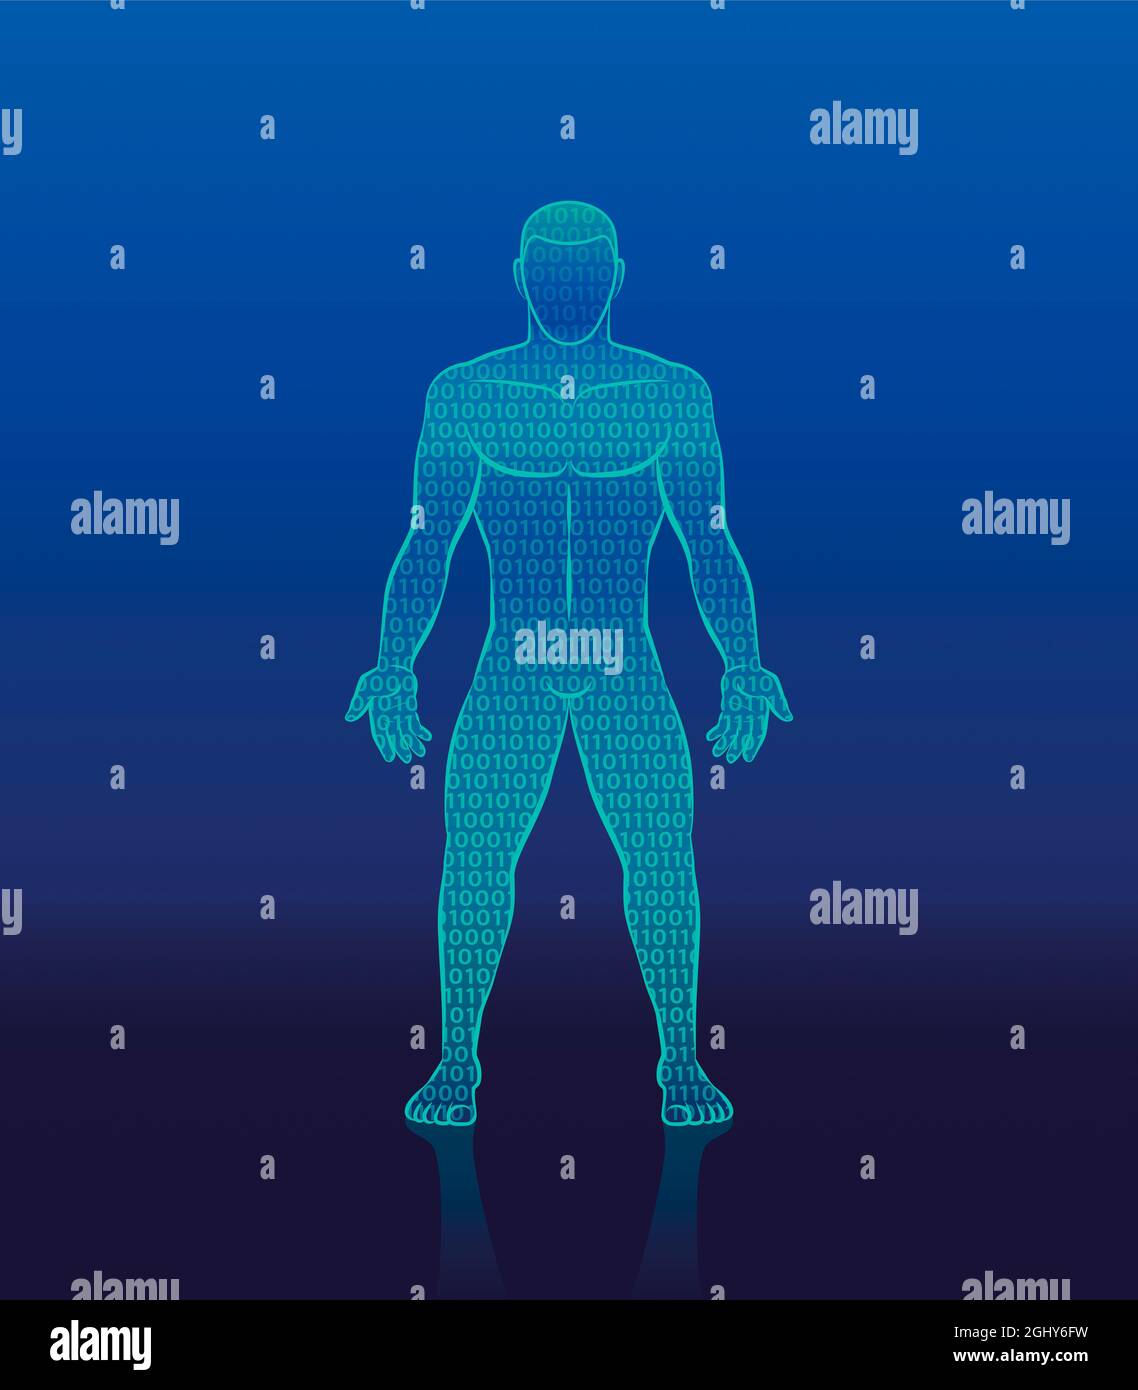 Code binaire cyber-homme - silhouette humaine numérique composée de uns et de zéros - symbole de l'intelligence artificielle, de la cybernétique, de la robotique bionique. Banque D'Images